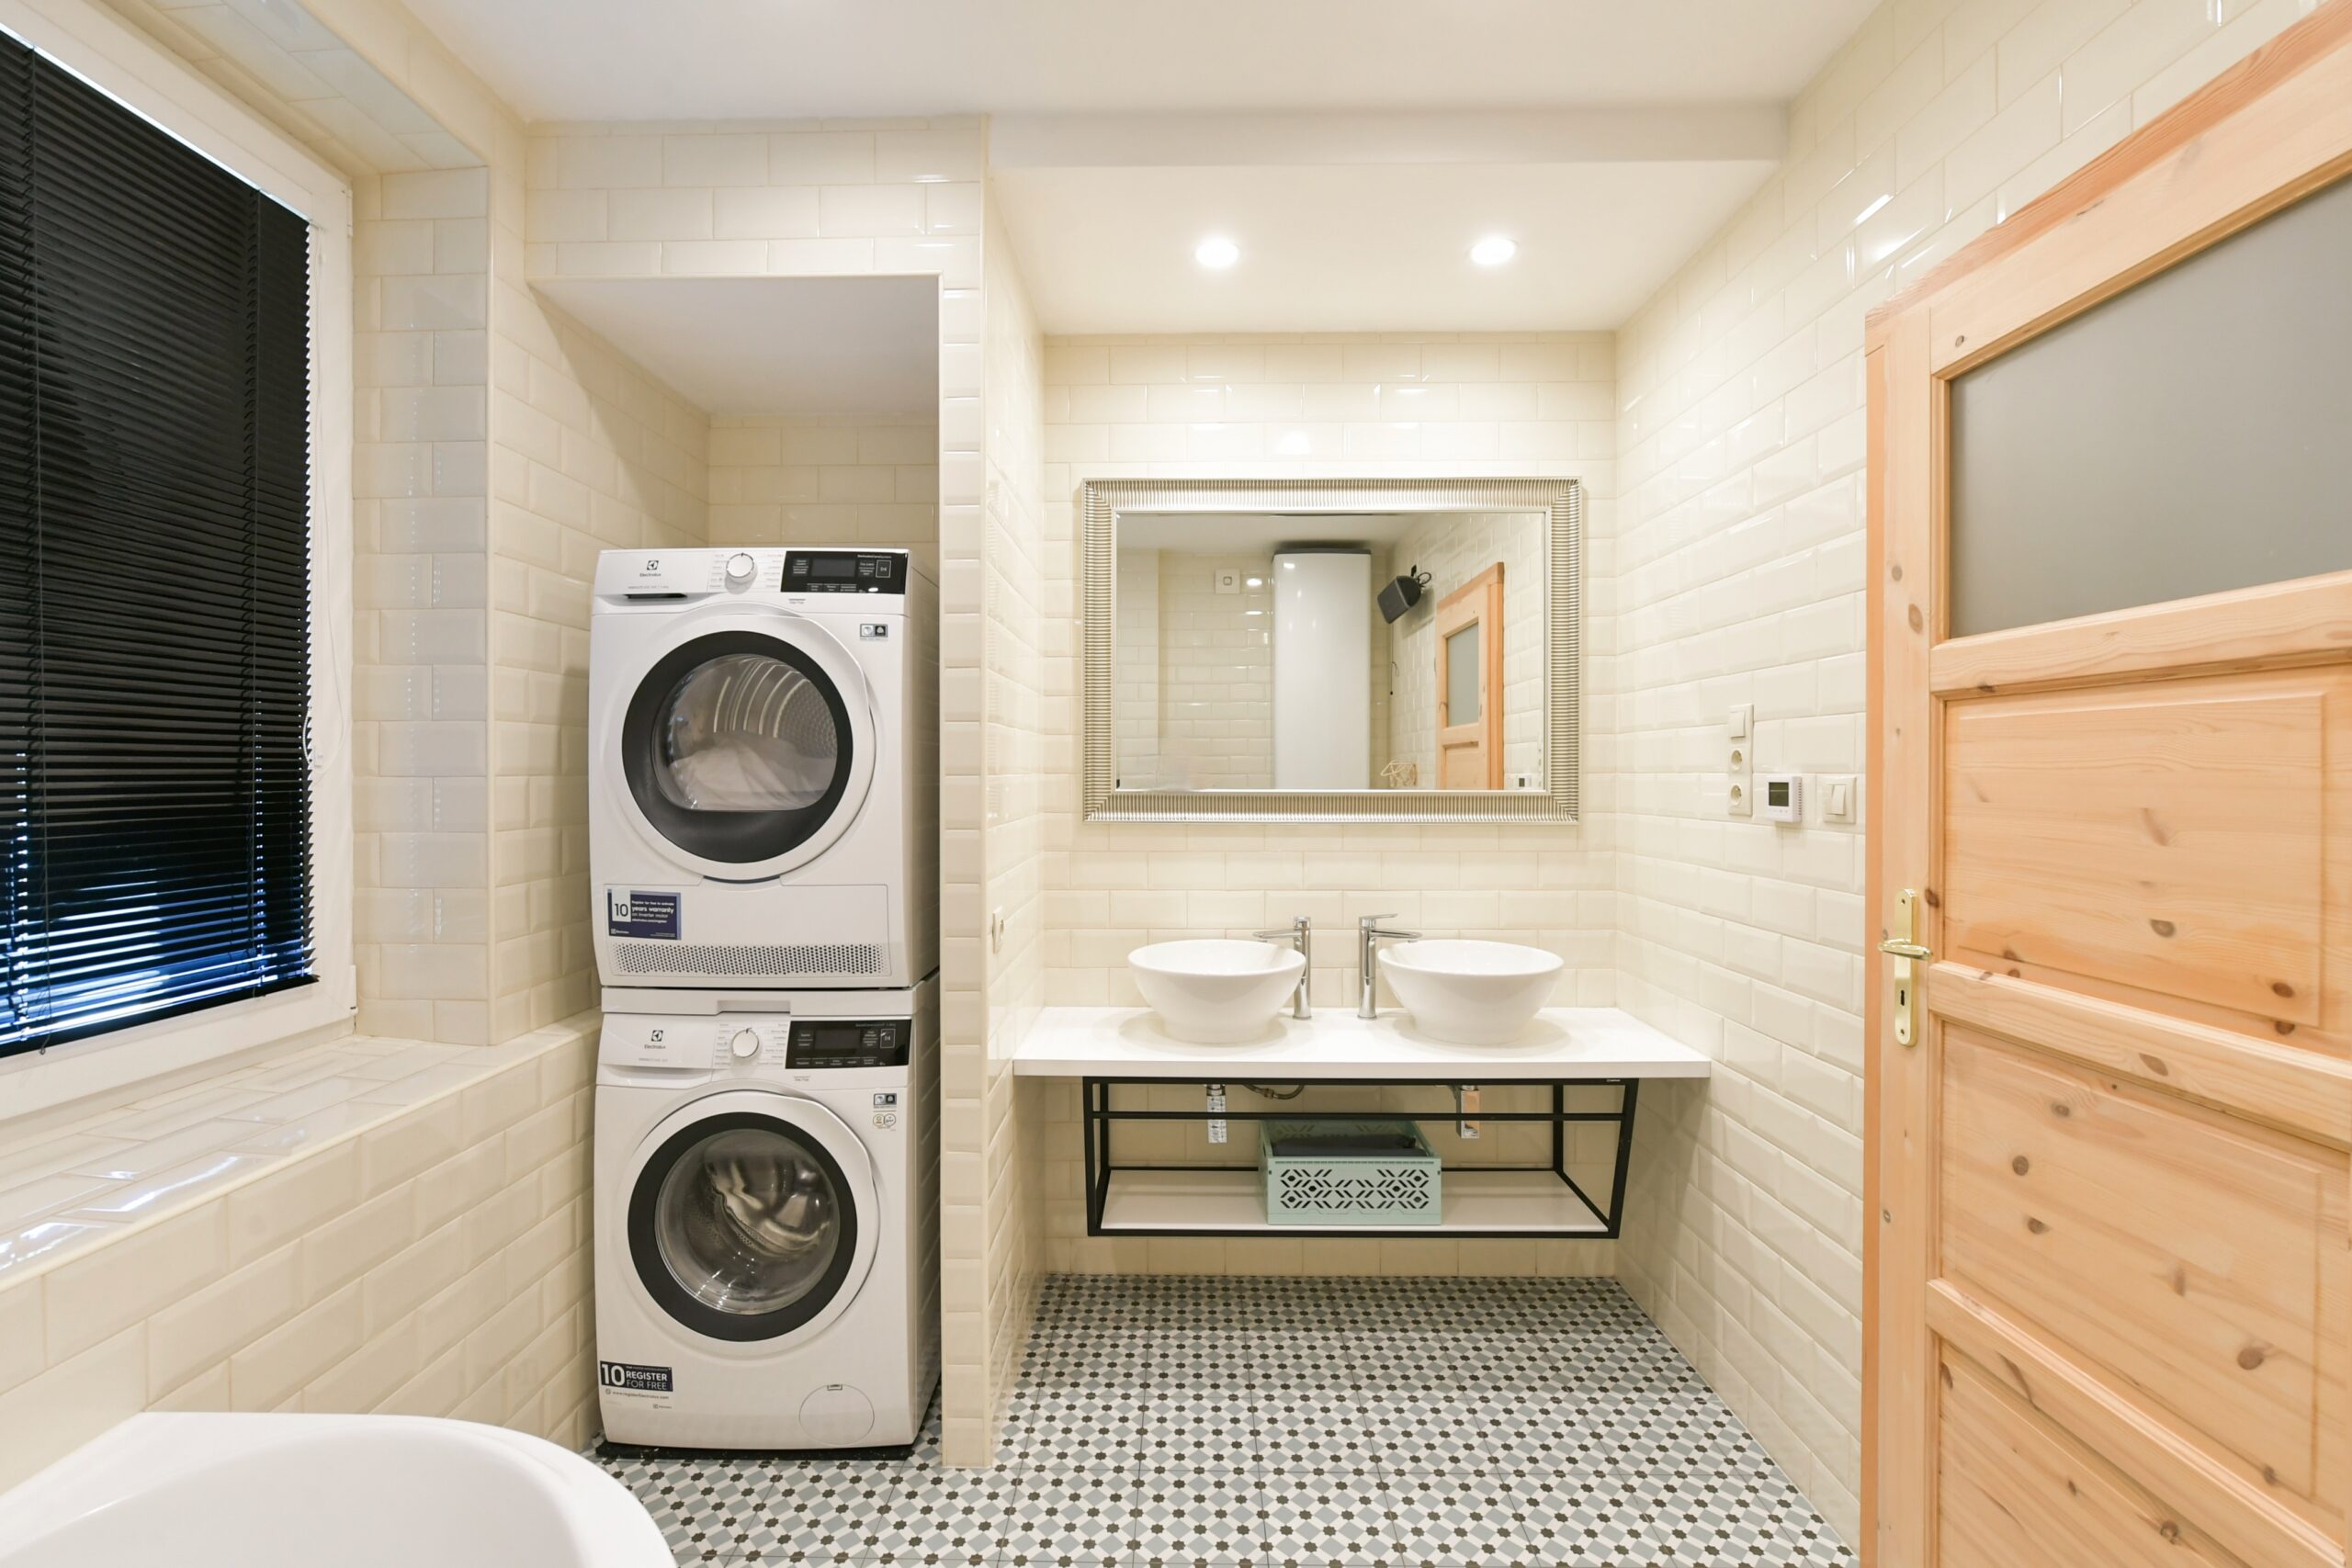 Snímek z vybavení apartmánu, koupelna s pračkou a sušičkou.